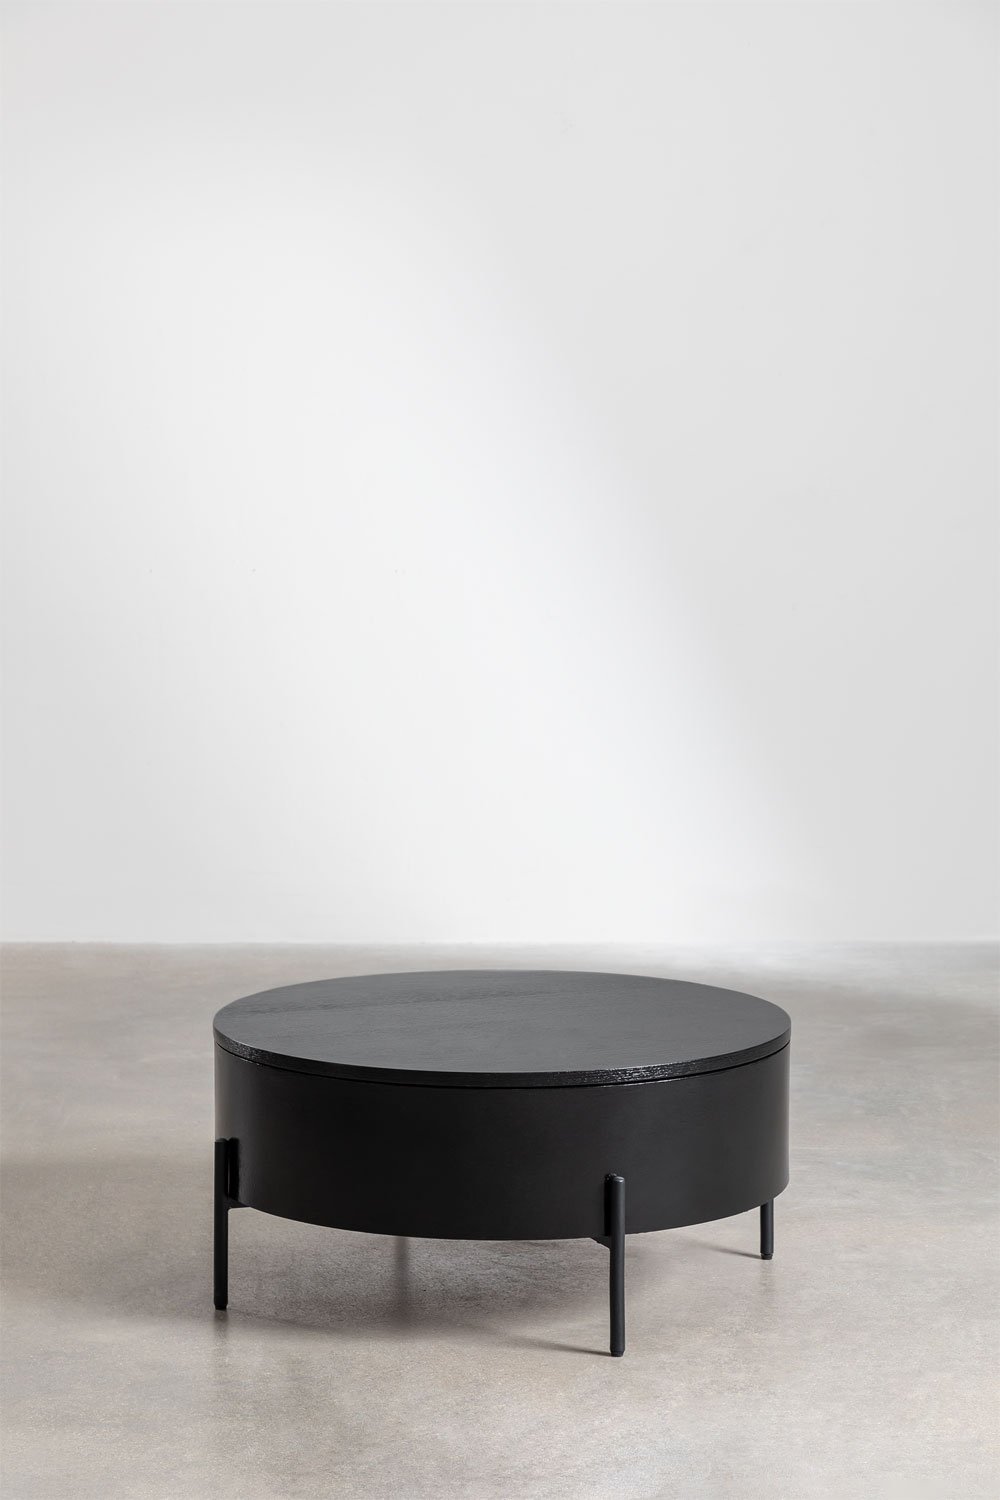 Ronde verhoogde salontafel van hout en staal (Ø80 cm) Tainara, galerij beeld 1